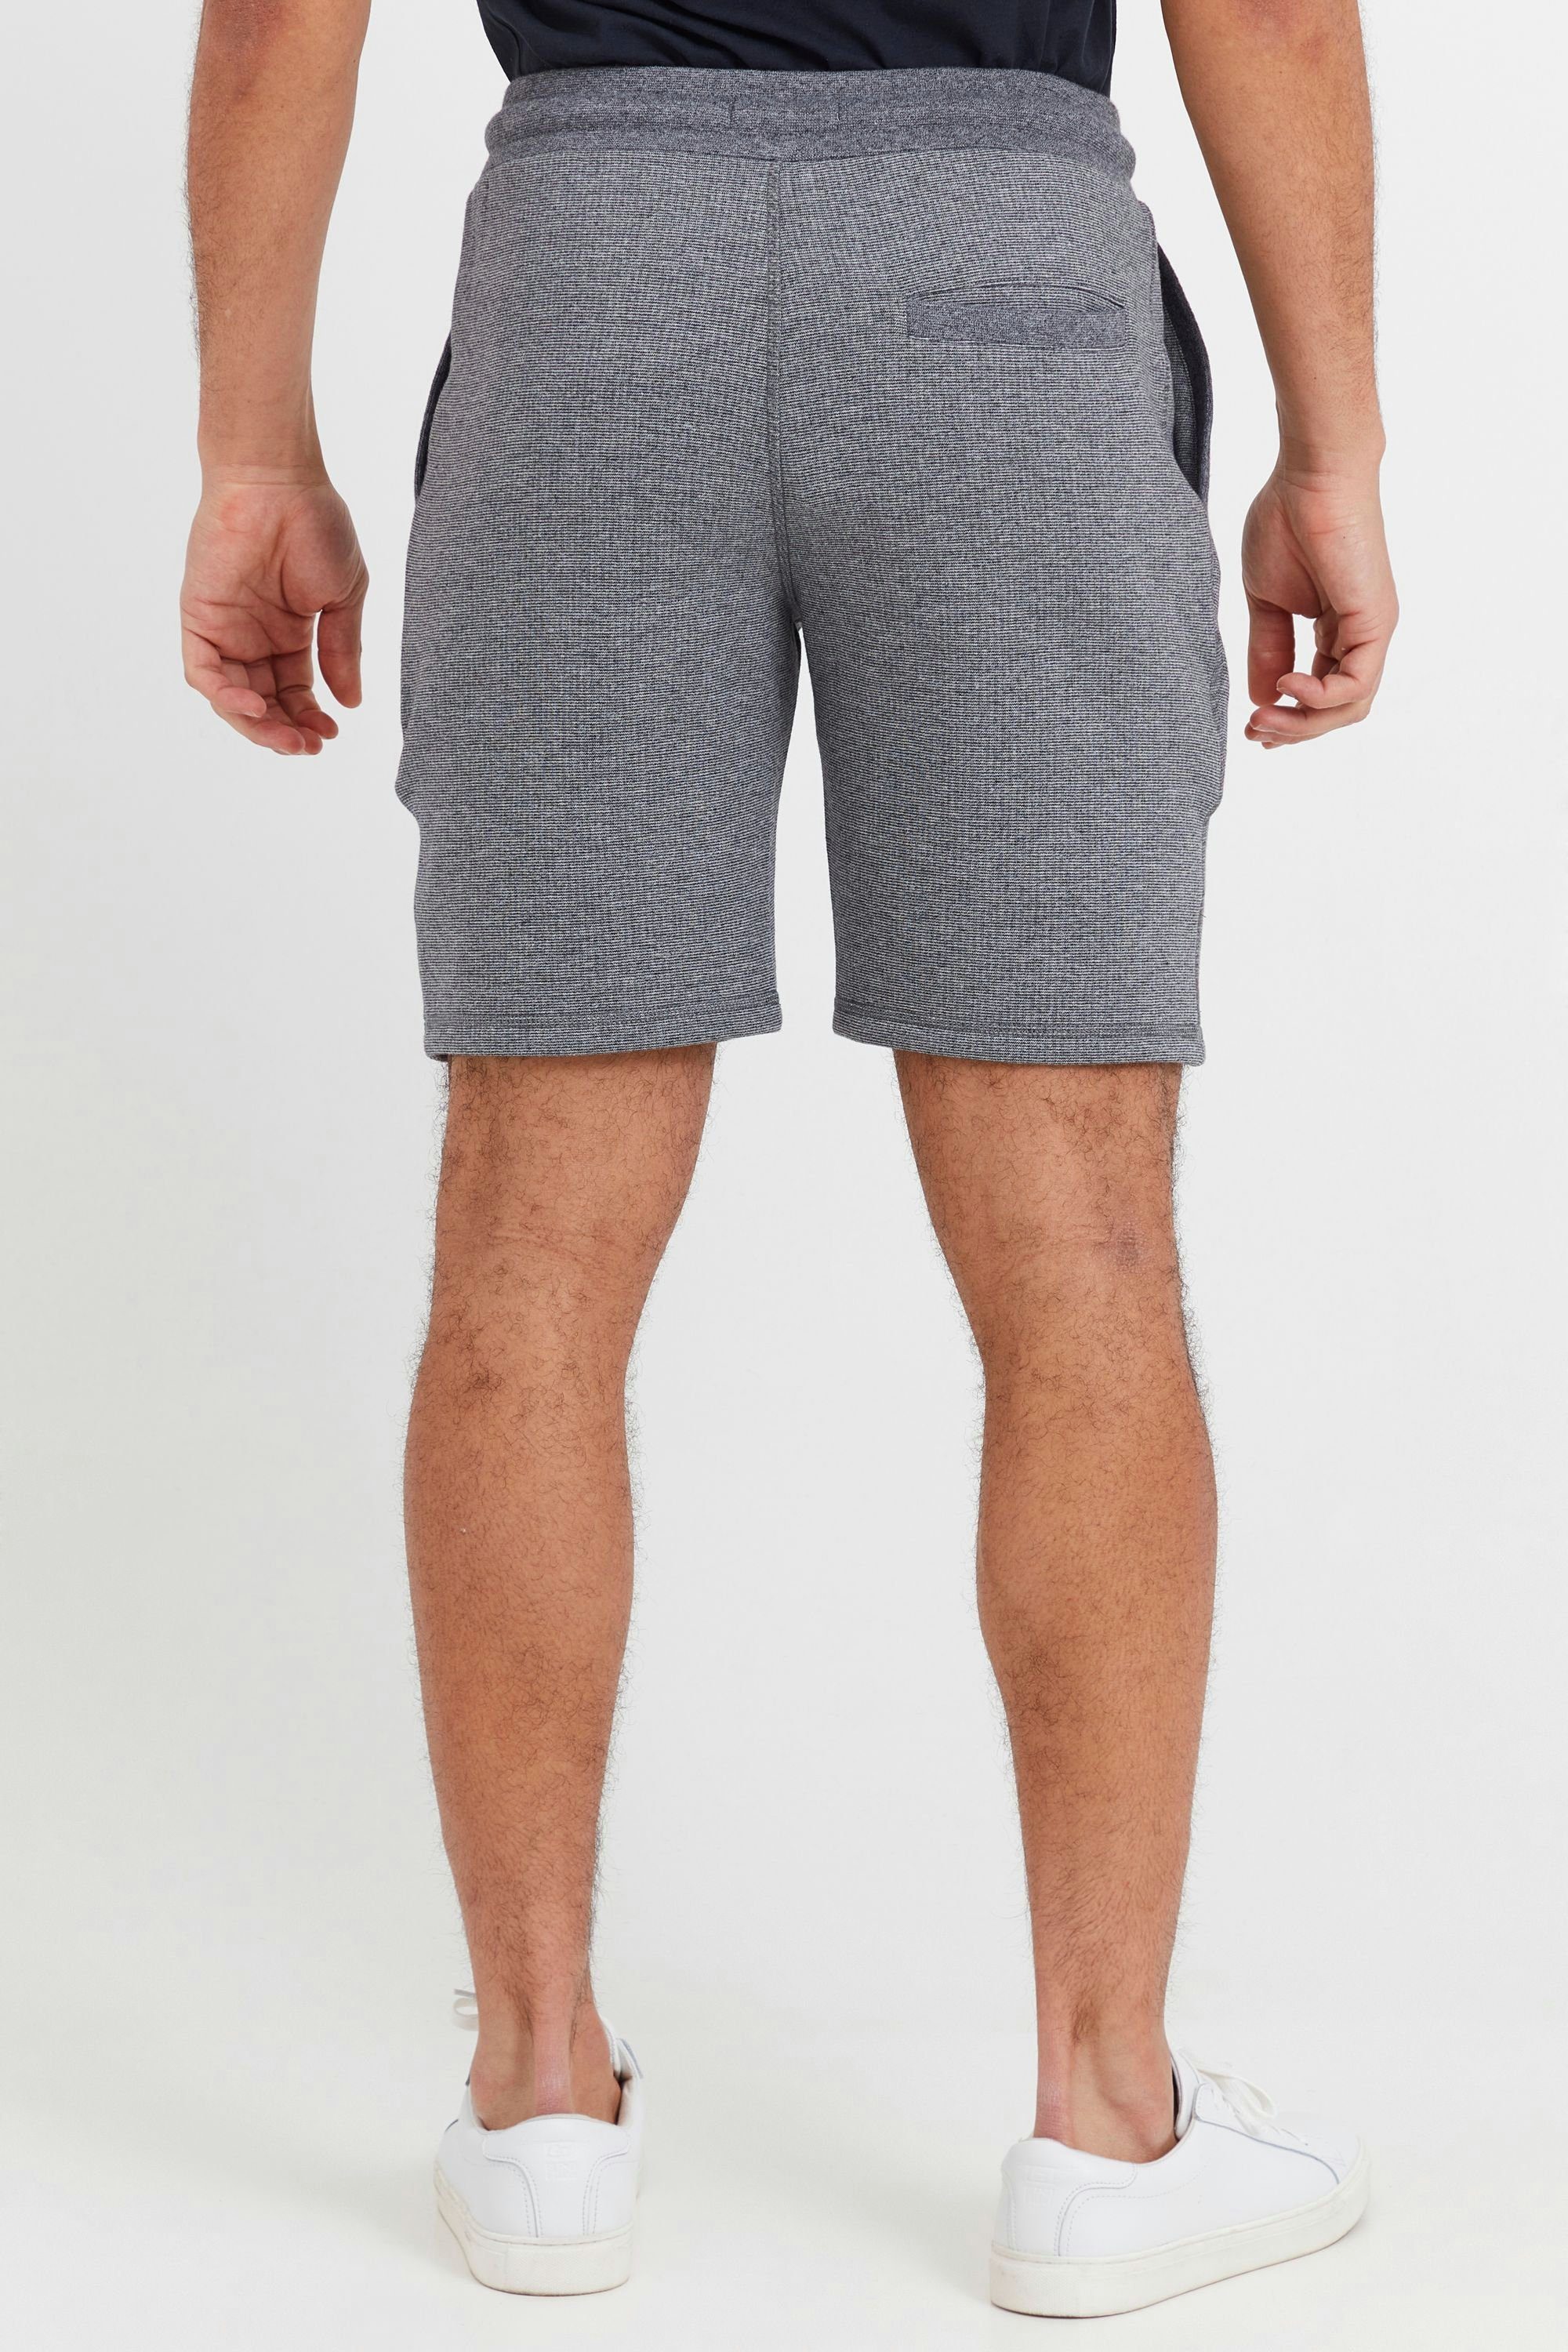 (1940071) Melange !Solid Grey Dark SDNafko Sweat mit Sweatshorts Shorts Kordeln